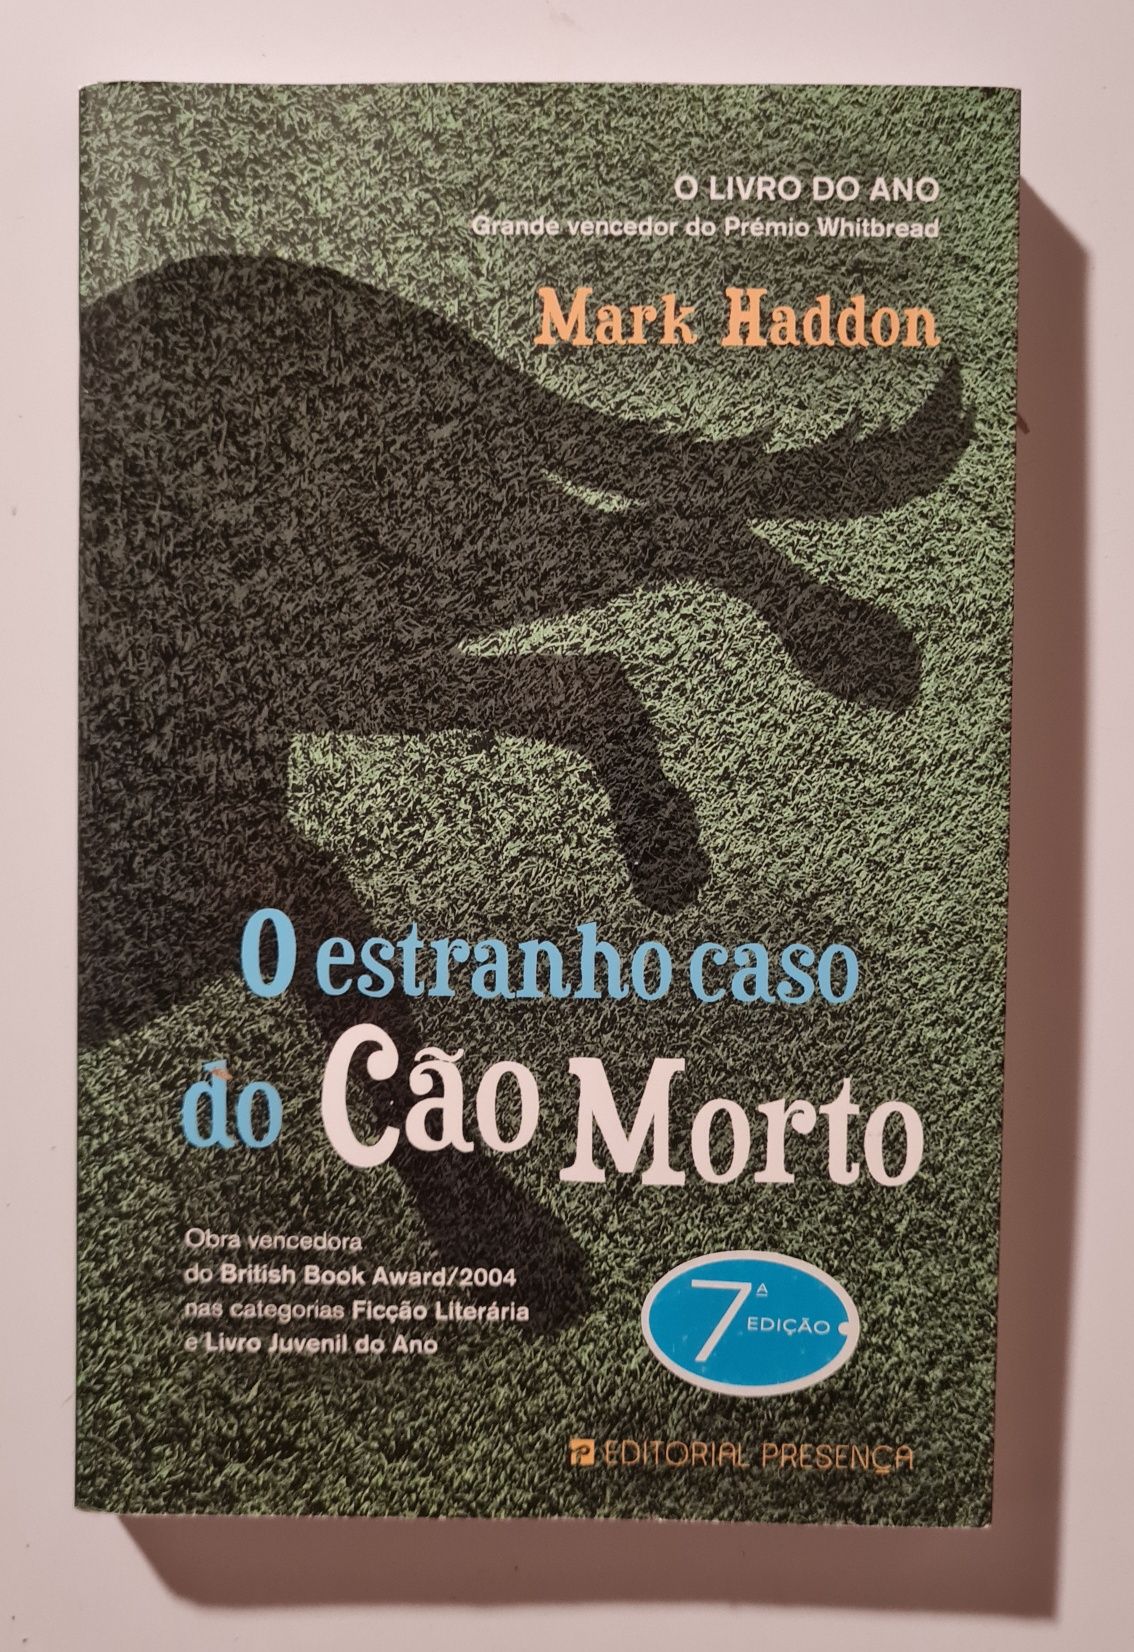 Livro: O estranho caso do cão morto - Mark Haddon
Mark Haddondo